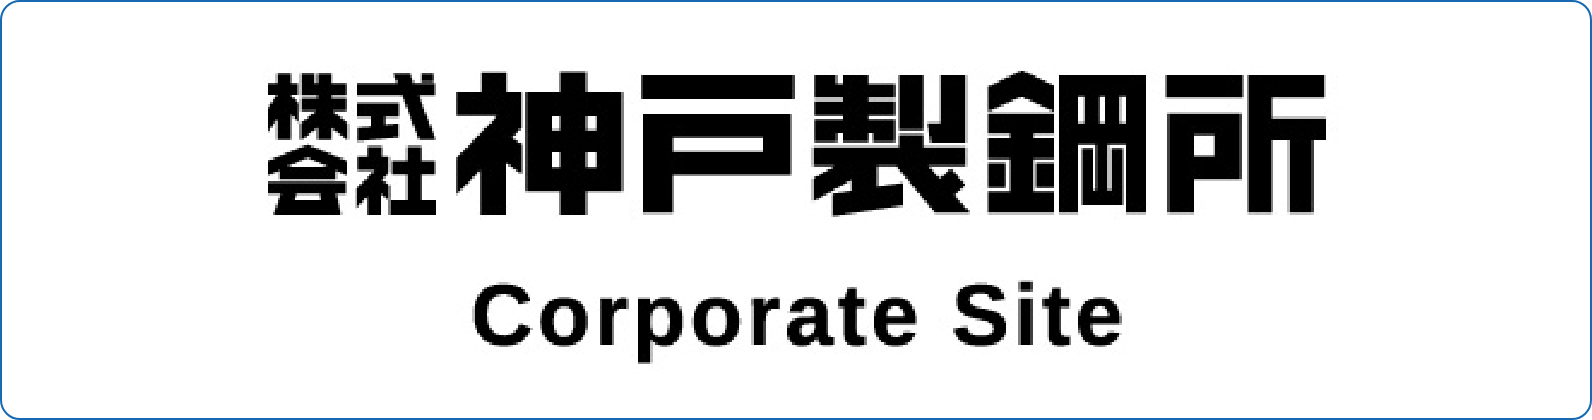 株式会社神戸製鋼所 Corporate Site